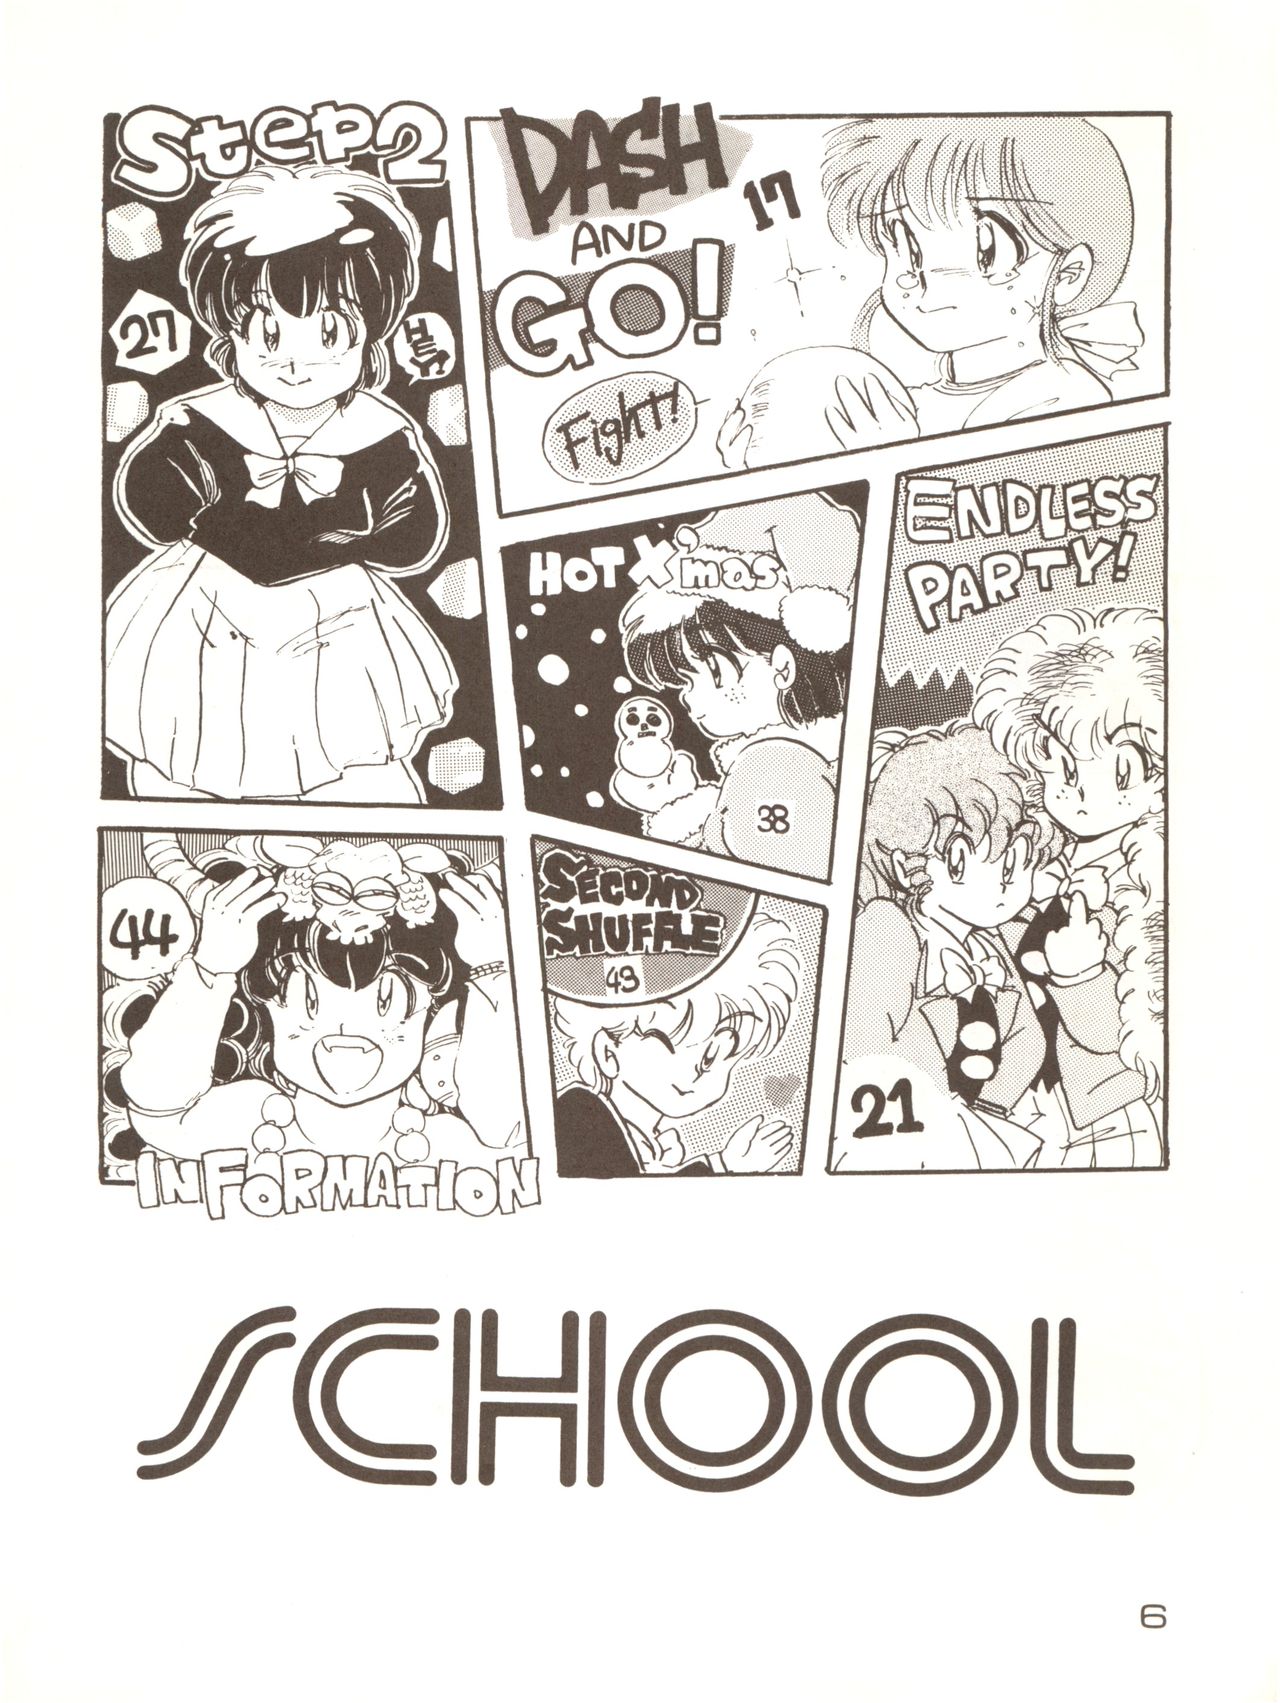 [URA (MEEM!] GIRLS SCHOOL